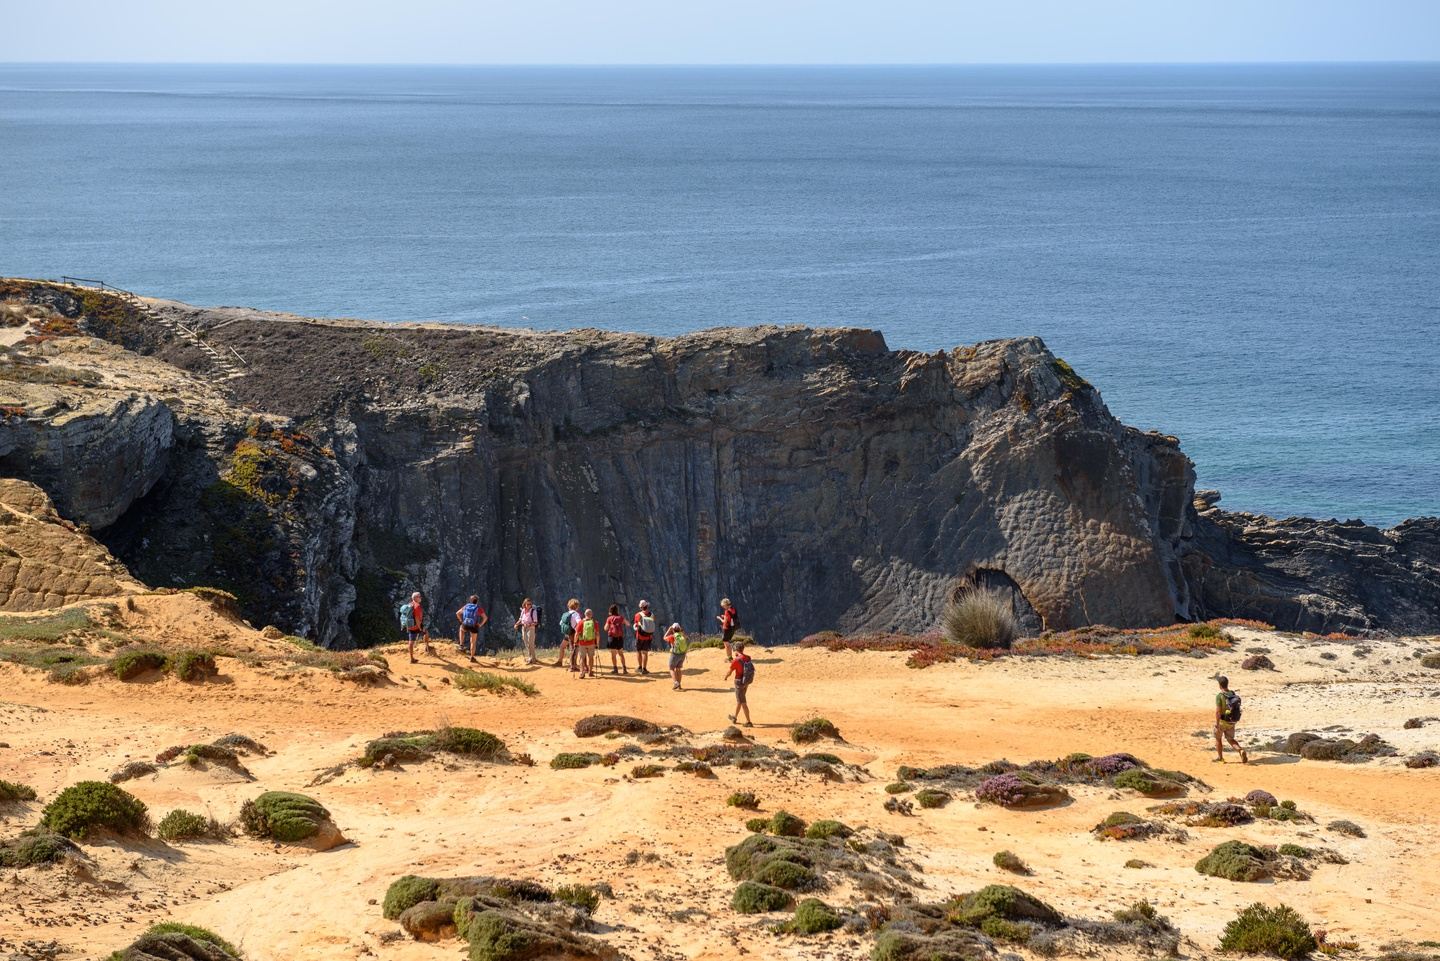 #4 Combined trails - Algarve - Part 2